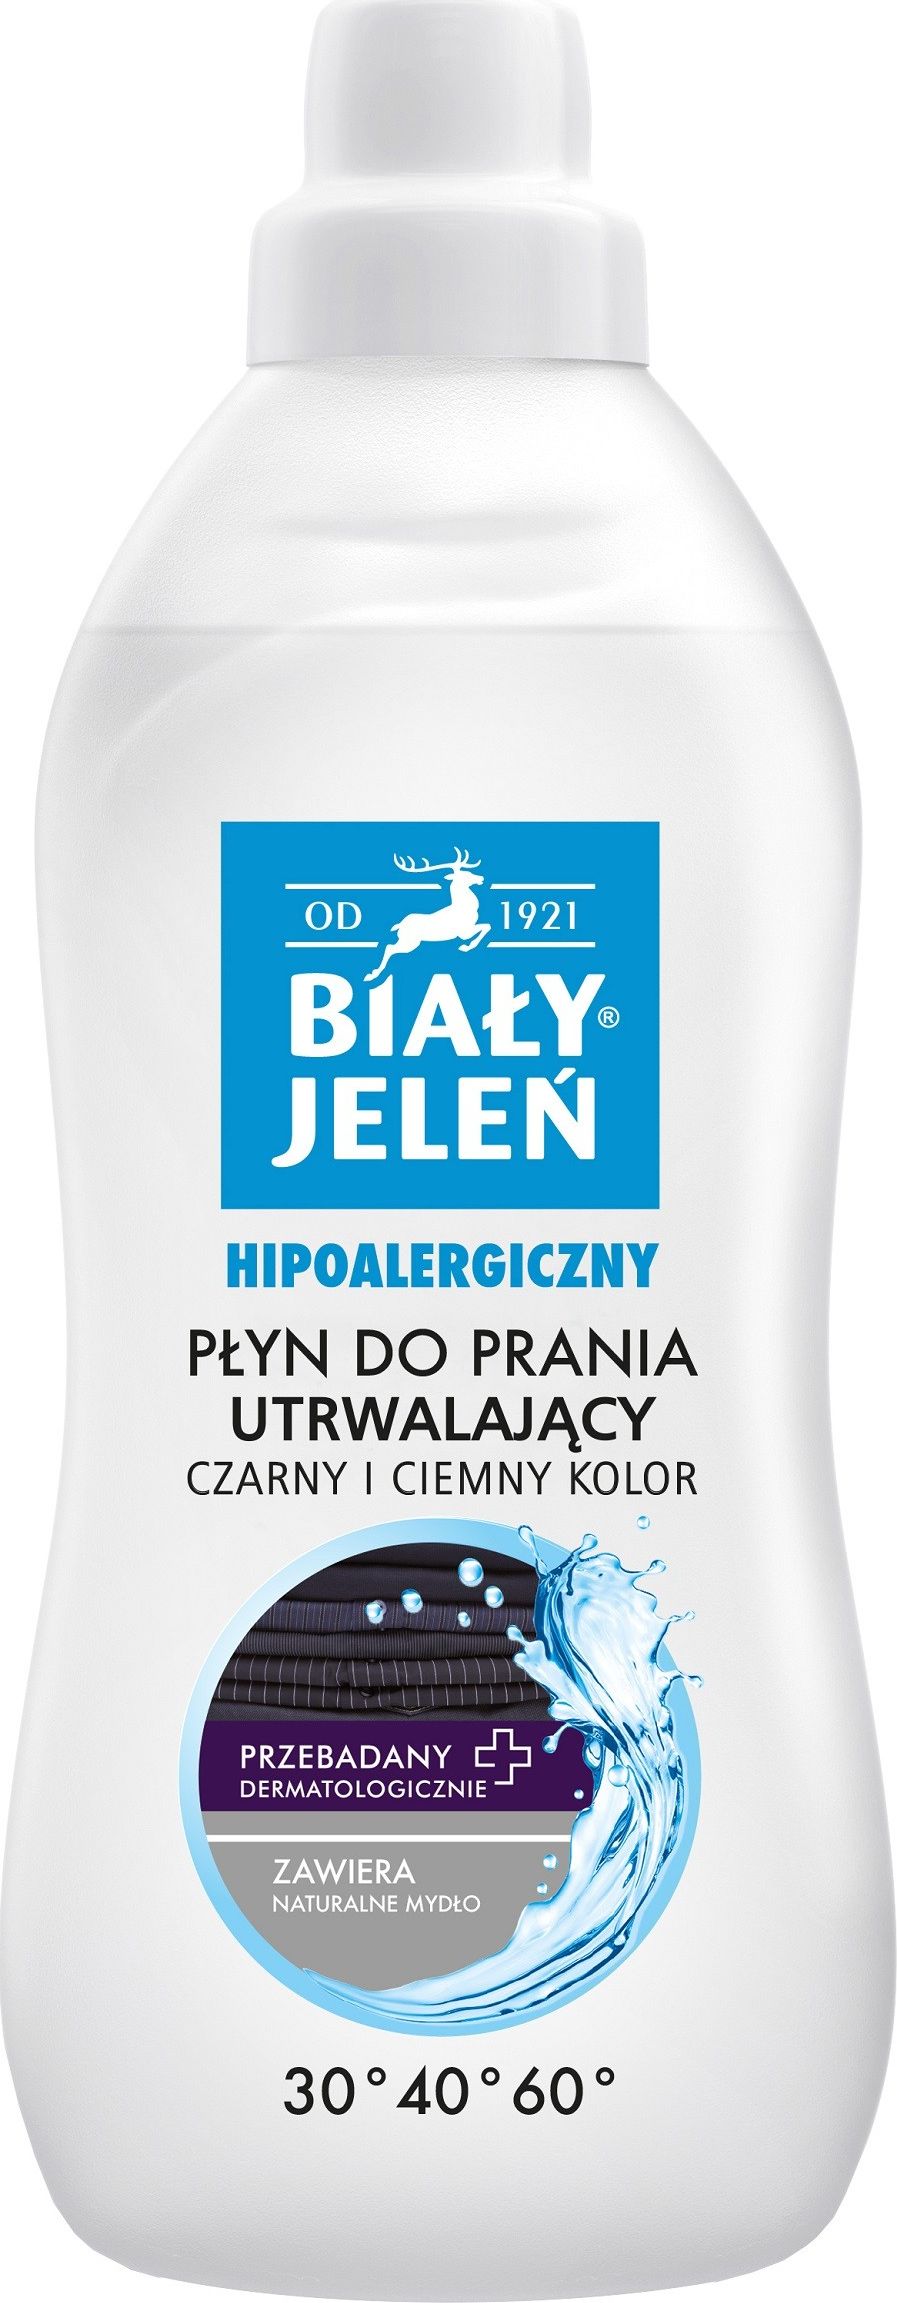 Bialy Jelen Bialy Jelen Hipoalergiczny Plyn do prania utrwalajacy - czarny i ciemny kolor 1L 809861 (5900133019861) Sadzīves ķīmija